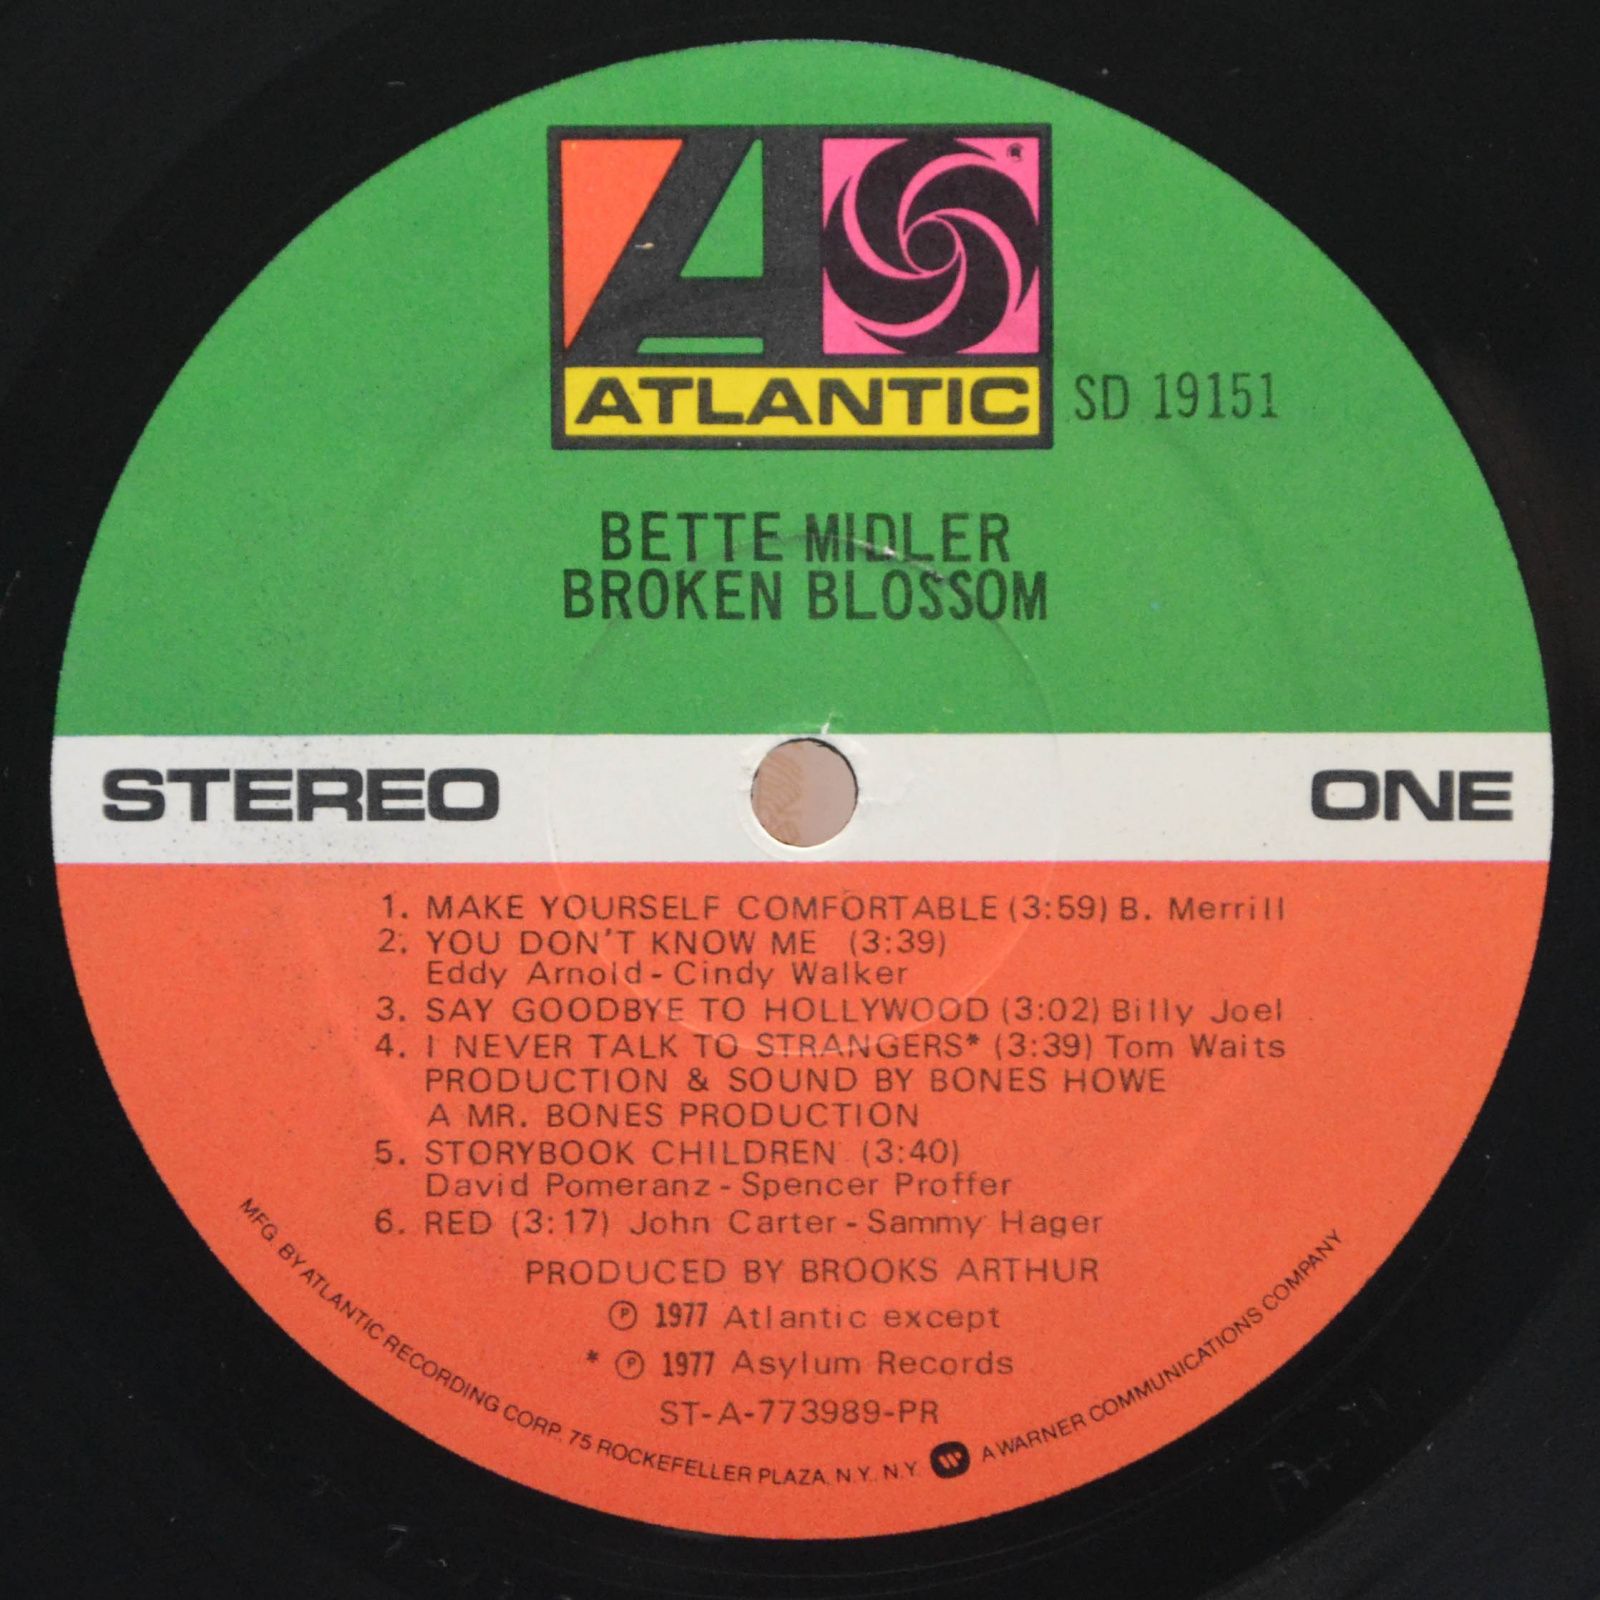 Bette Midler — Broken Blossom, 1977